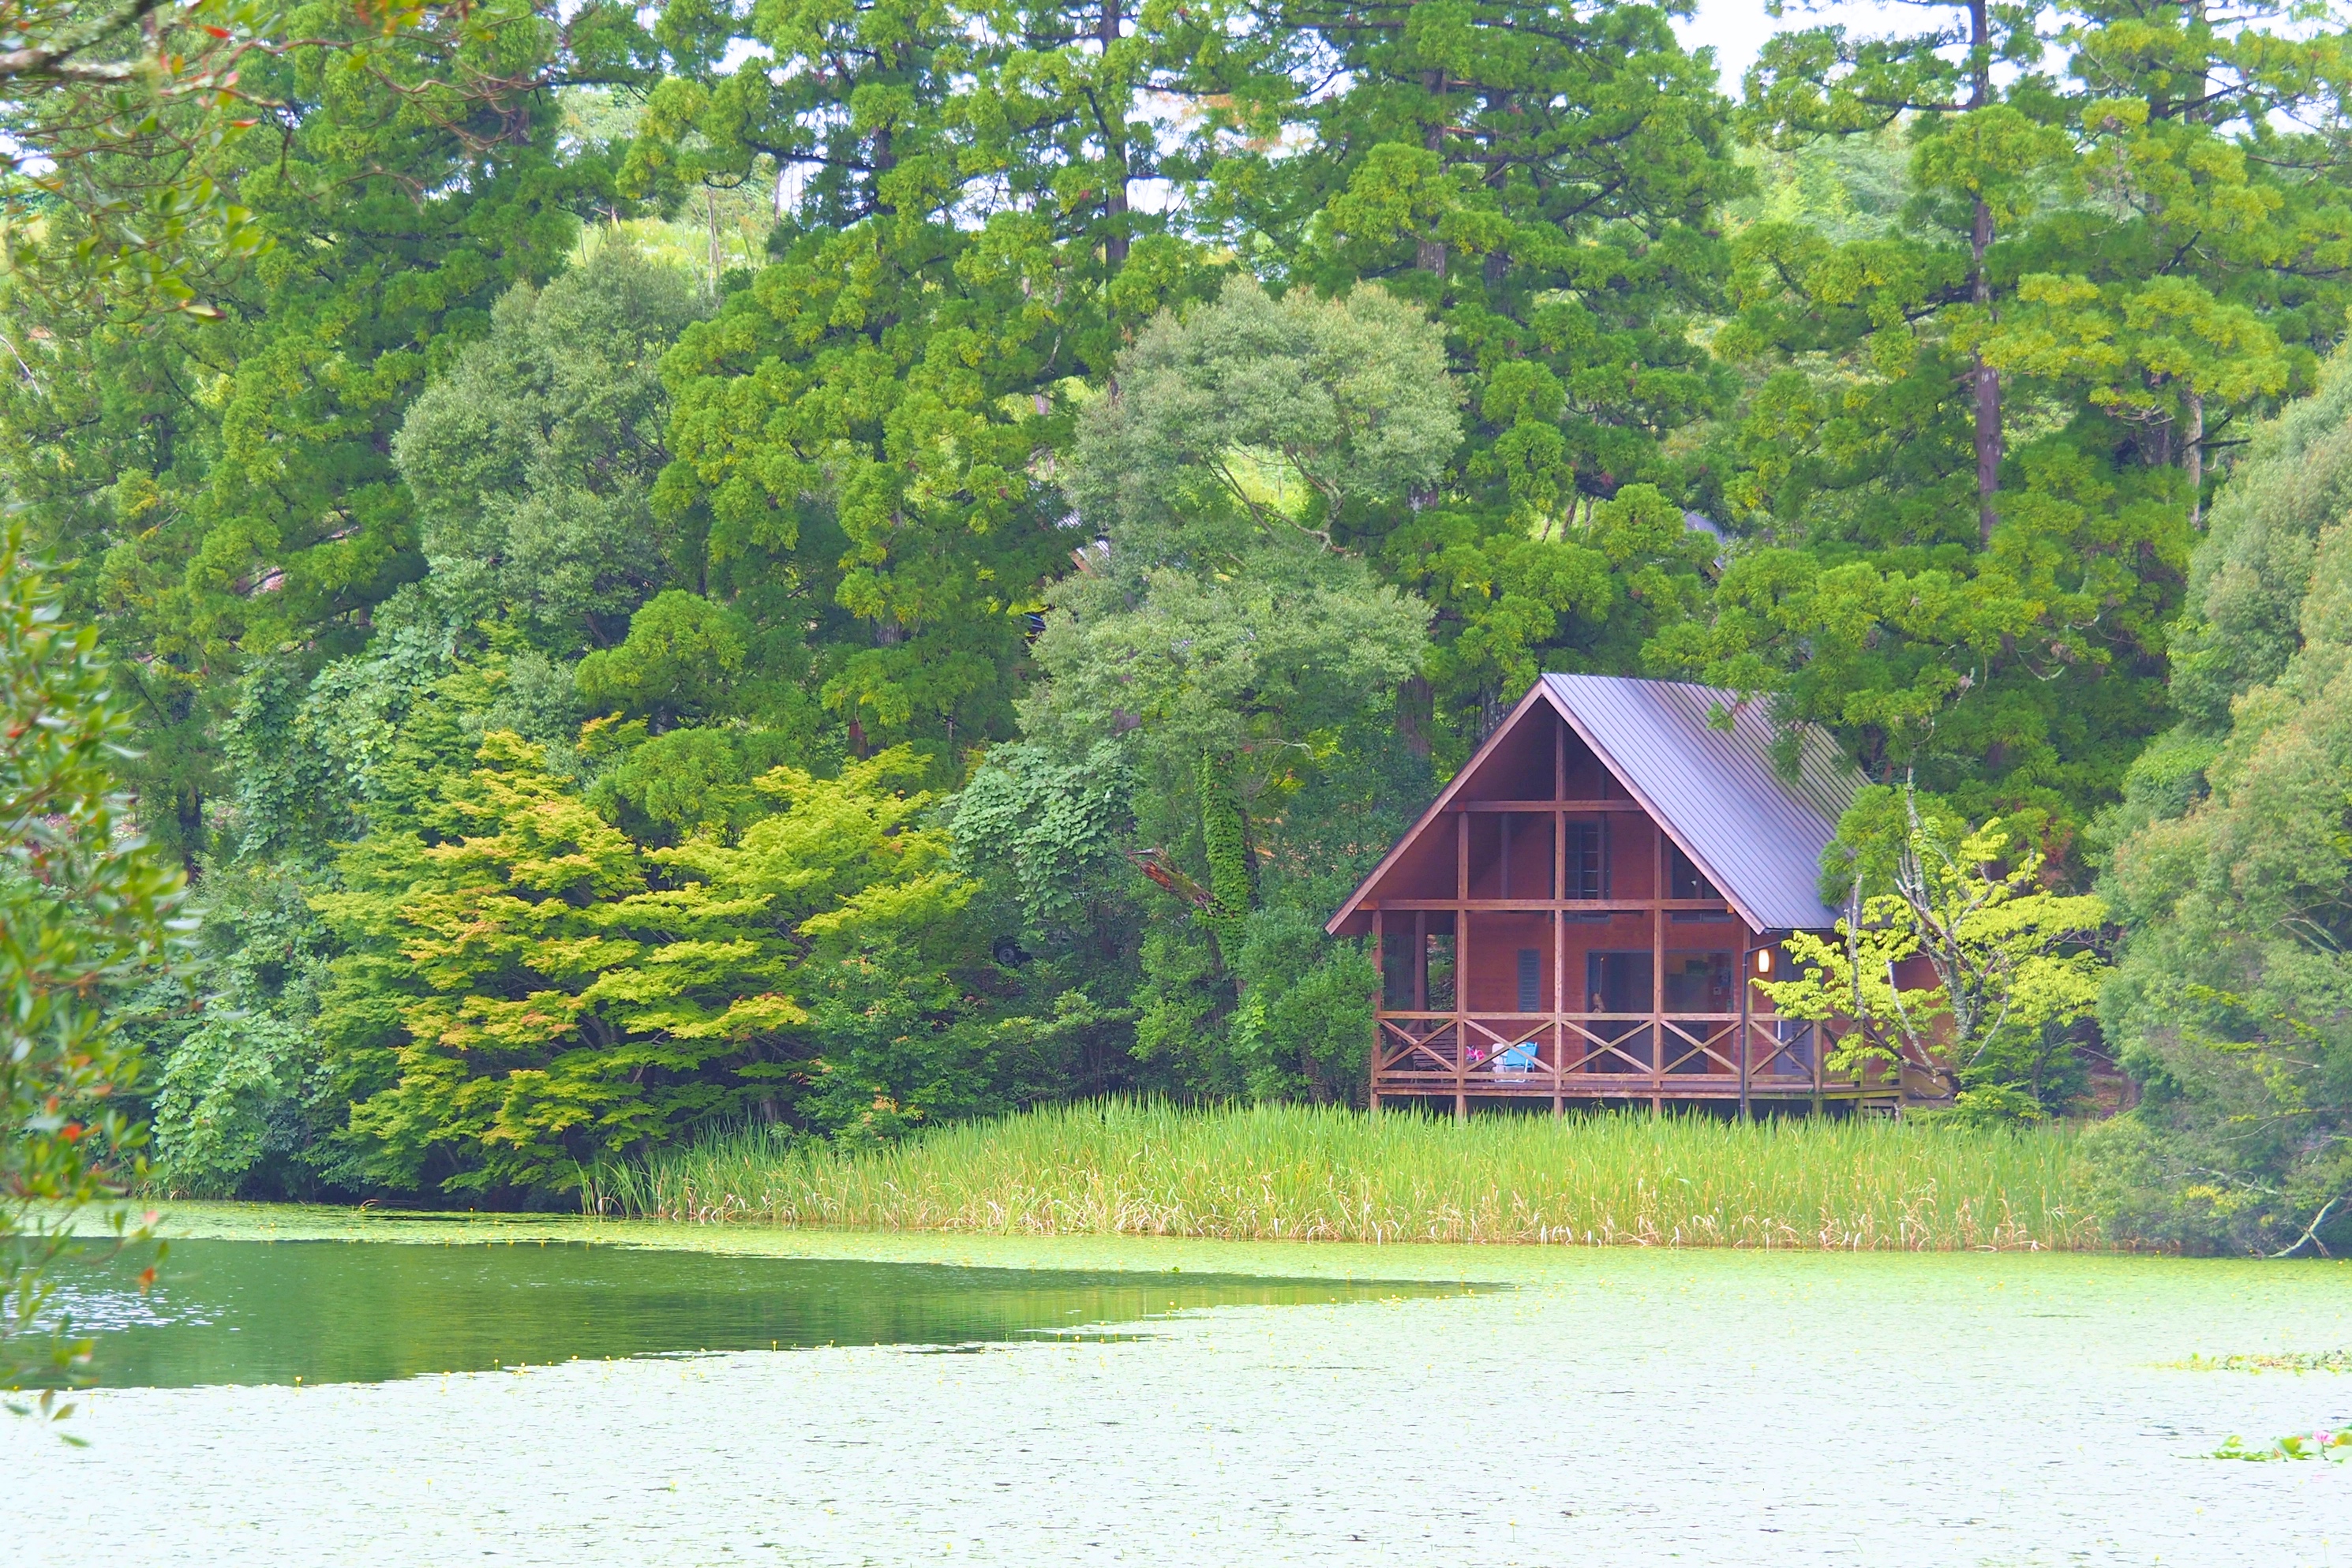 星野村の 池の山キャンプ場 がとにかく最高だった 八女市 福岡touch